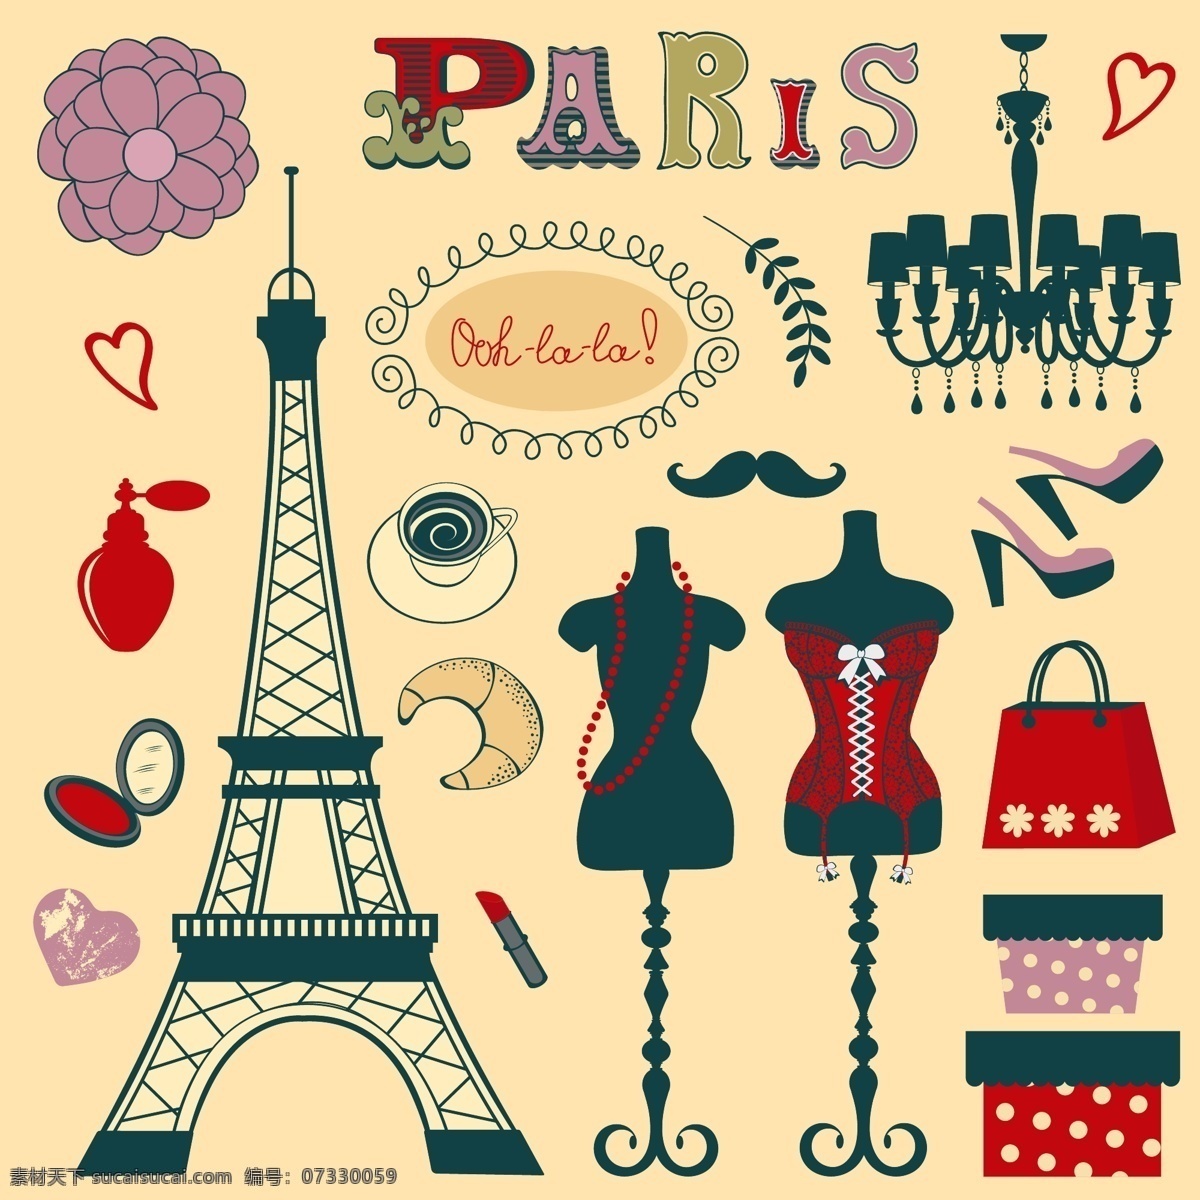 巴黎 旅游 元素 矢量 巴黎旅游元素 矢量素材 矢量图 铁塔 服装 手袋